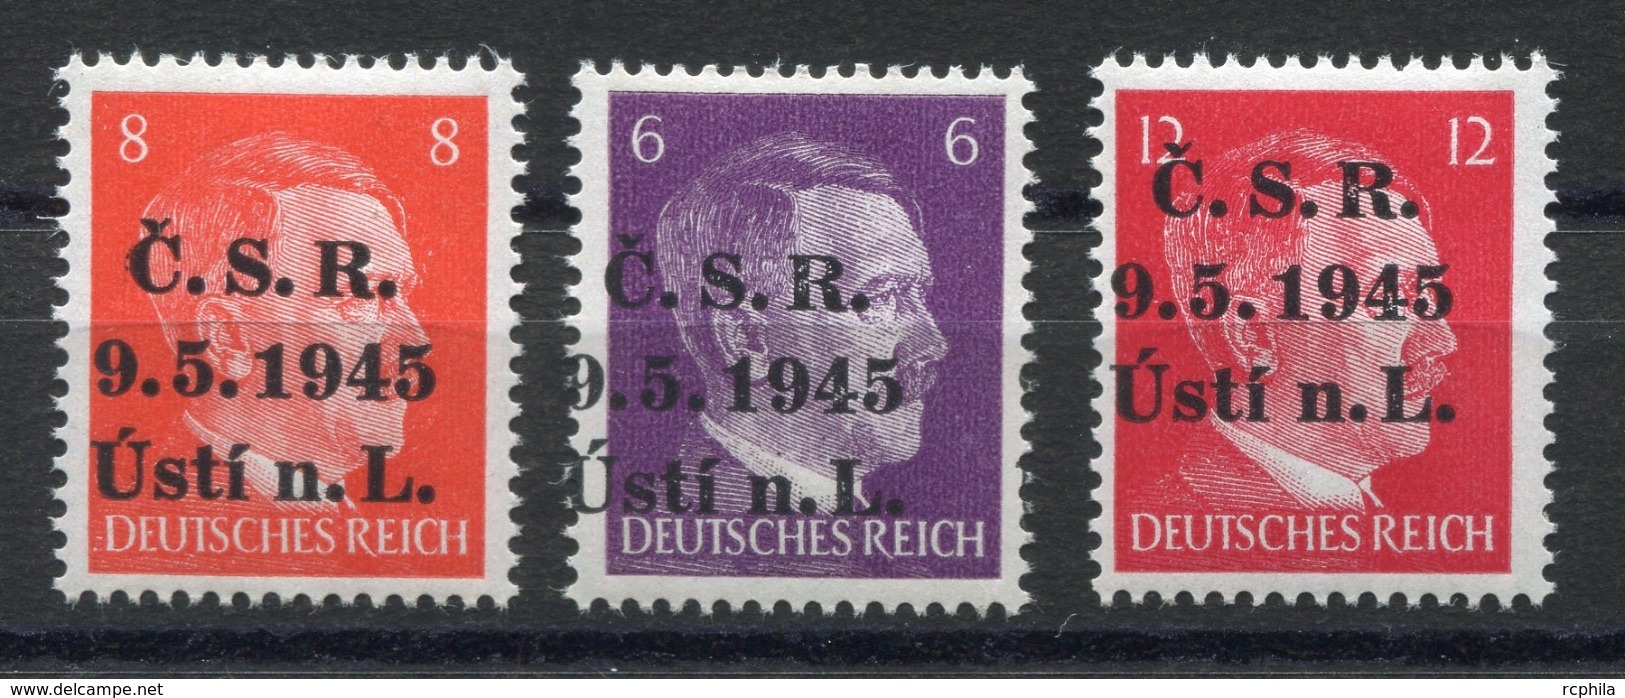 RC 6990 - LIBERATION DE LA TCHECOSLOVAQUIE 1945 ALLEMAGNE HITLER SURCHARGÉS CSR 9.5.1945 USTI N.L. NEUF ** - TB - Unused Stamps